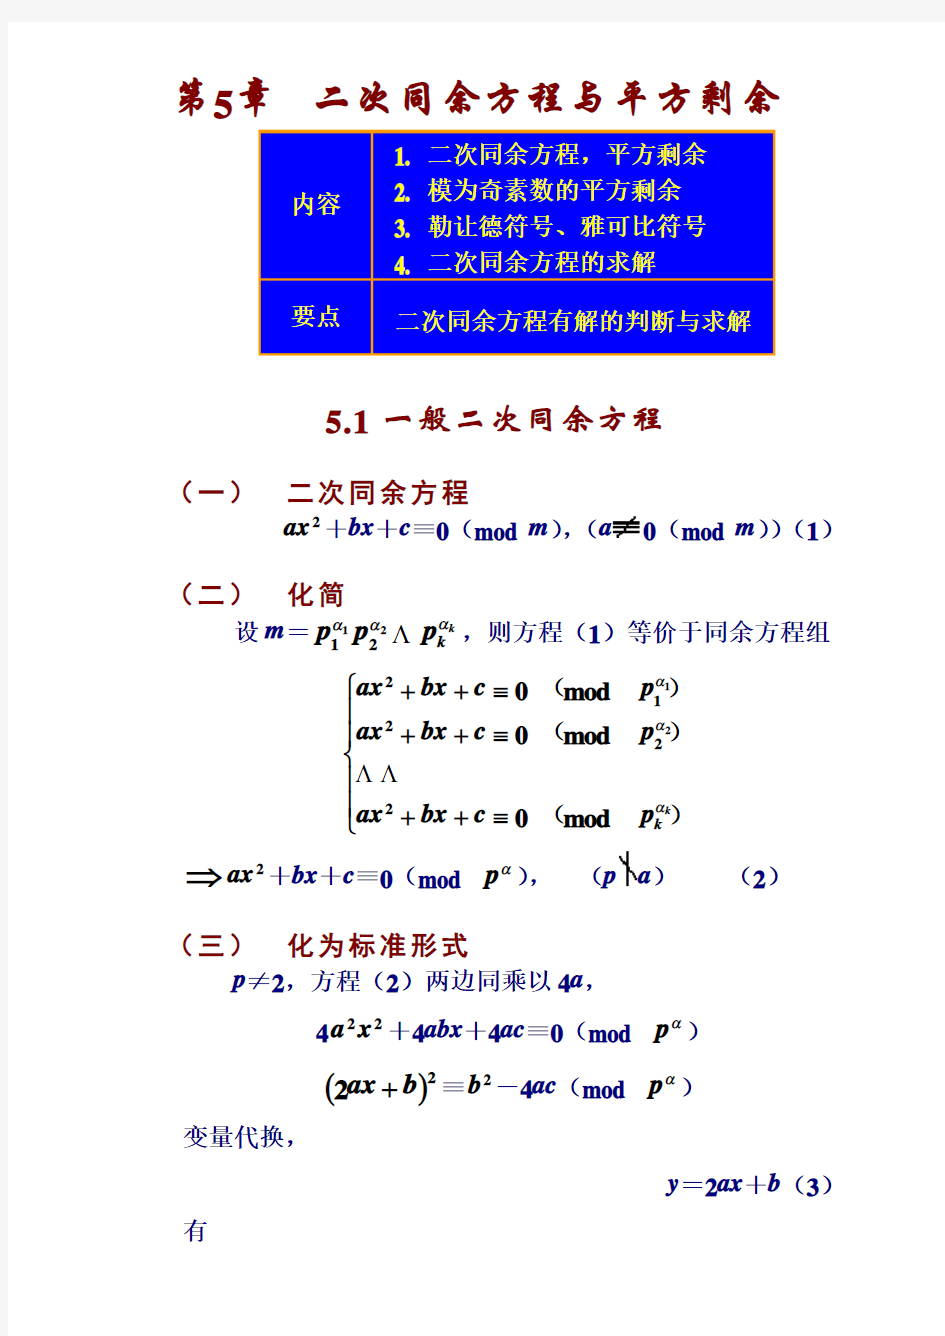 《数论算法》教案5章(二次同余方程与平方剩余) 